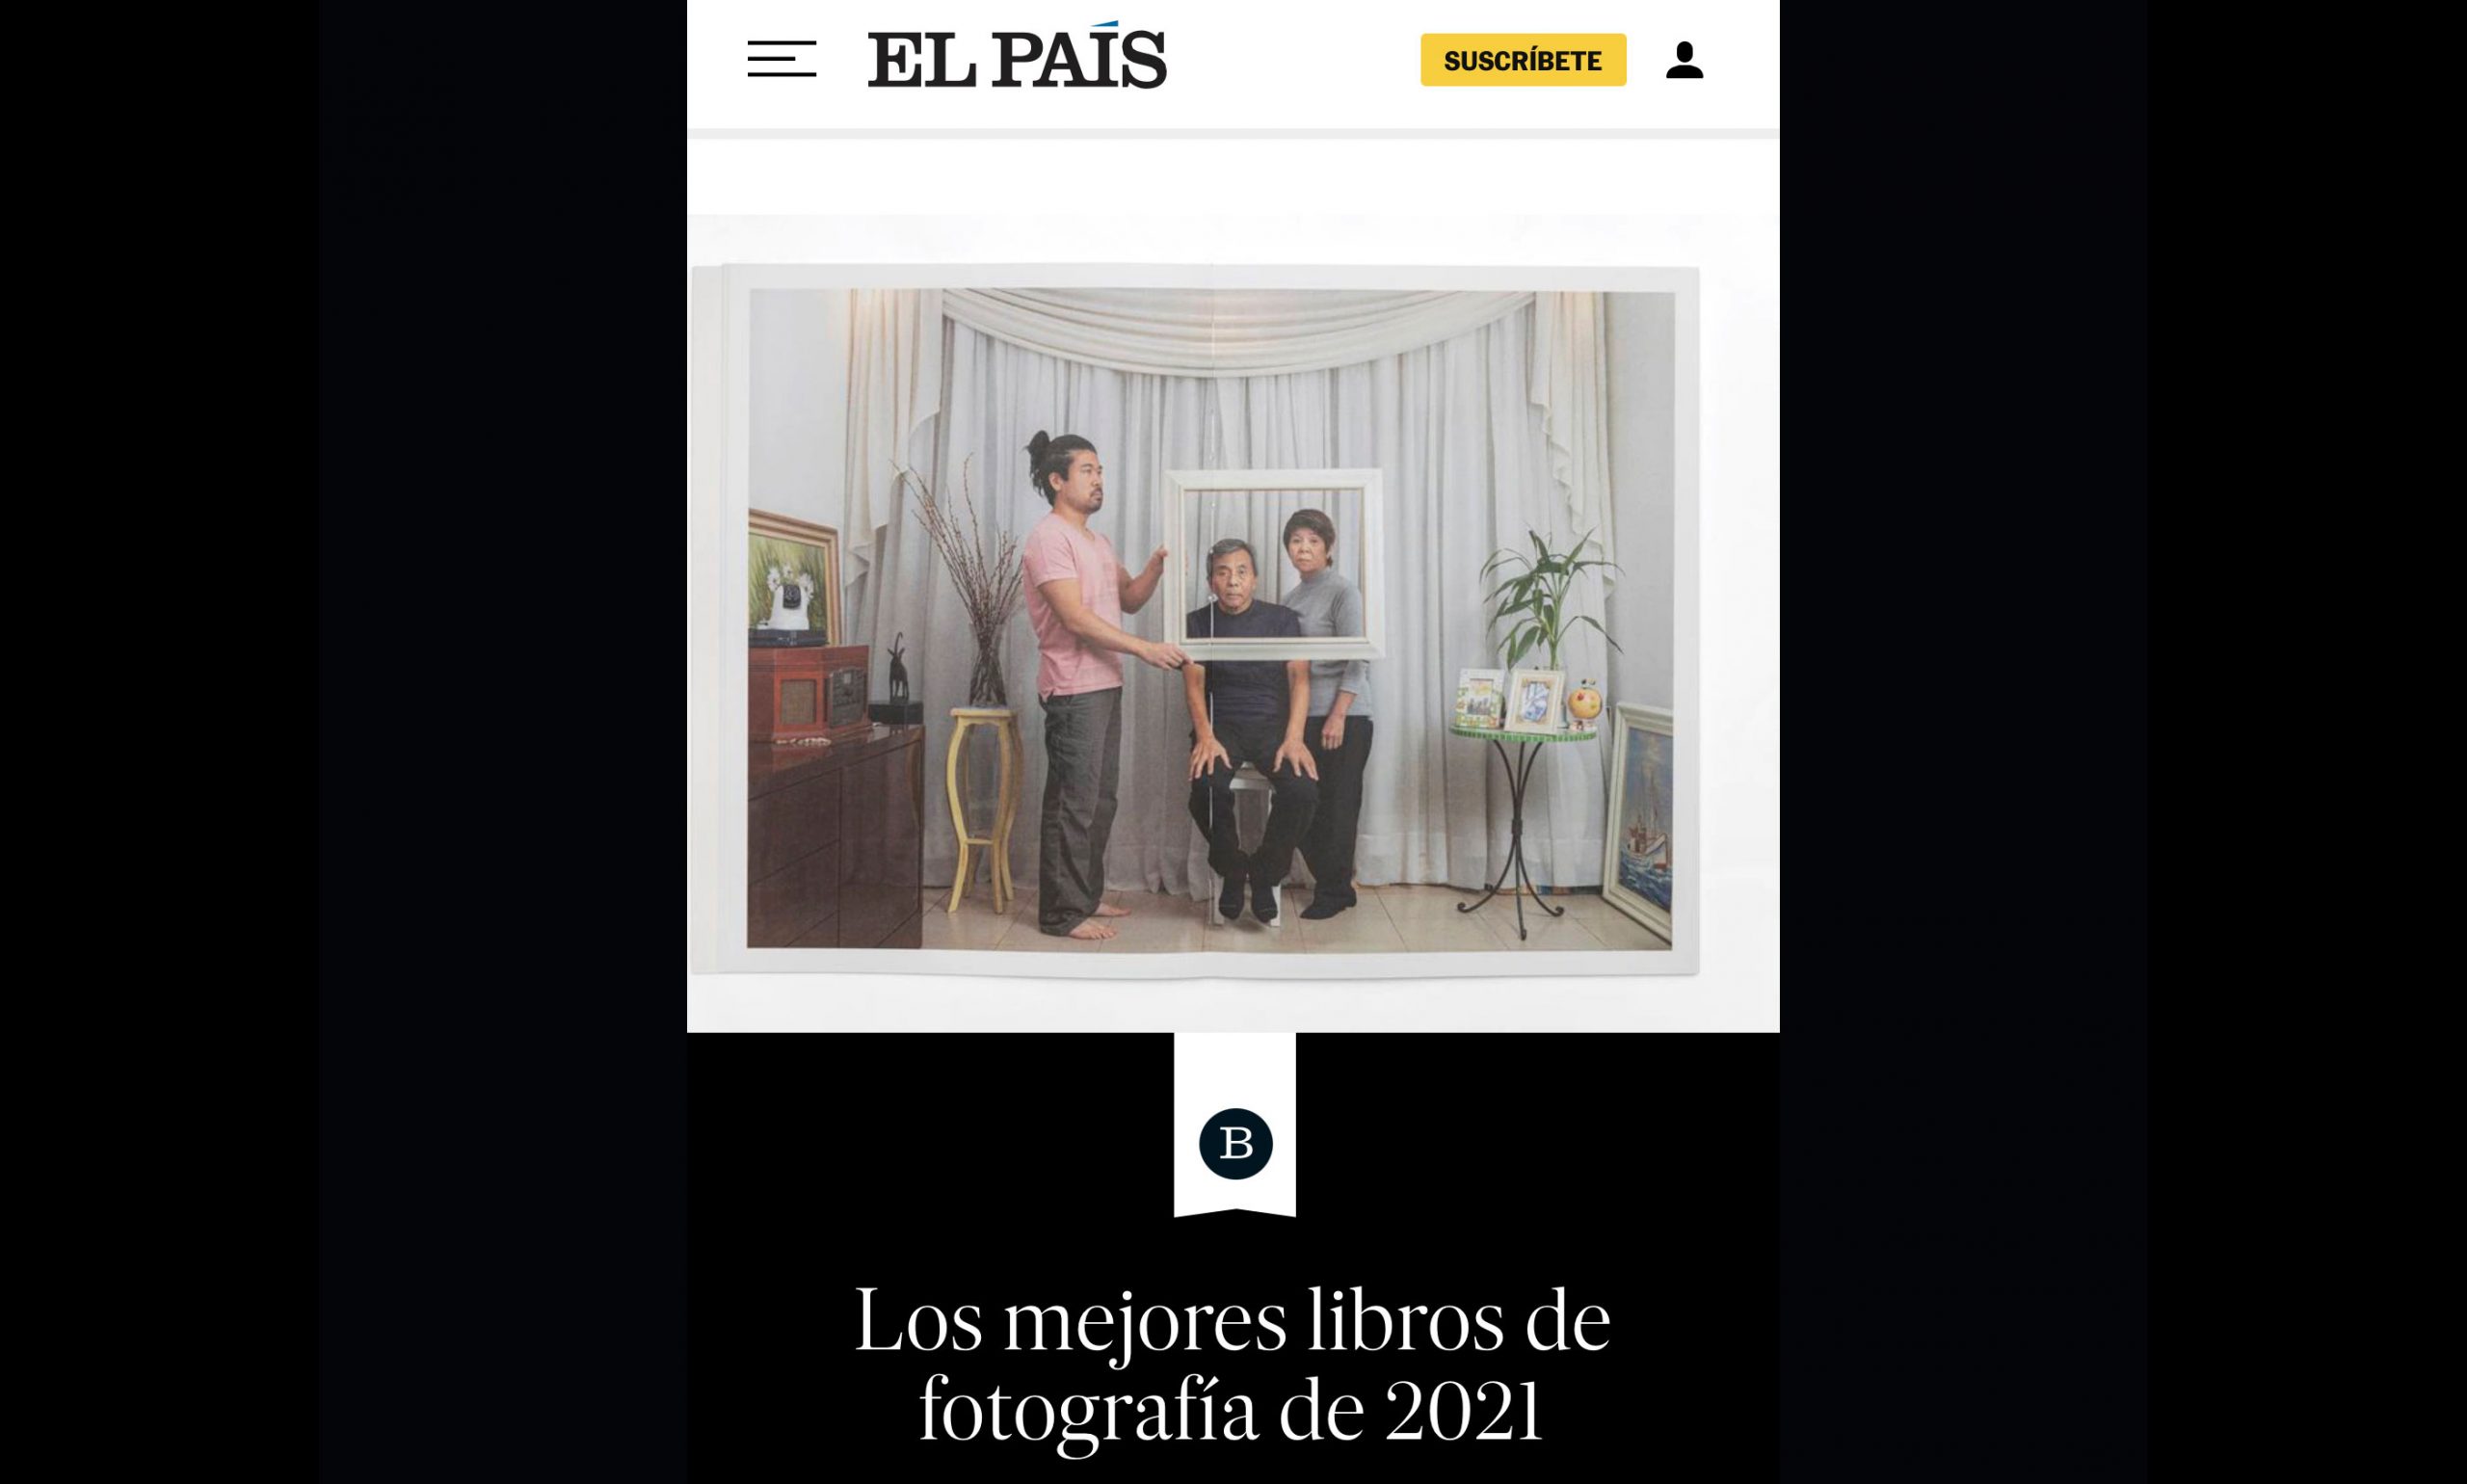 El País: os melhores livros de fotografia de 2021